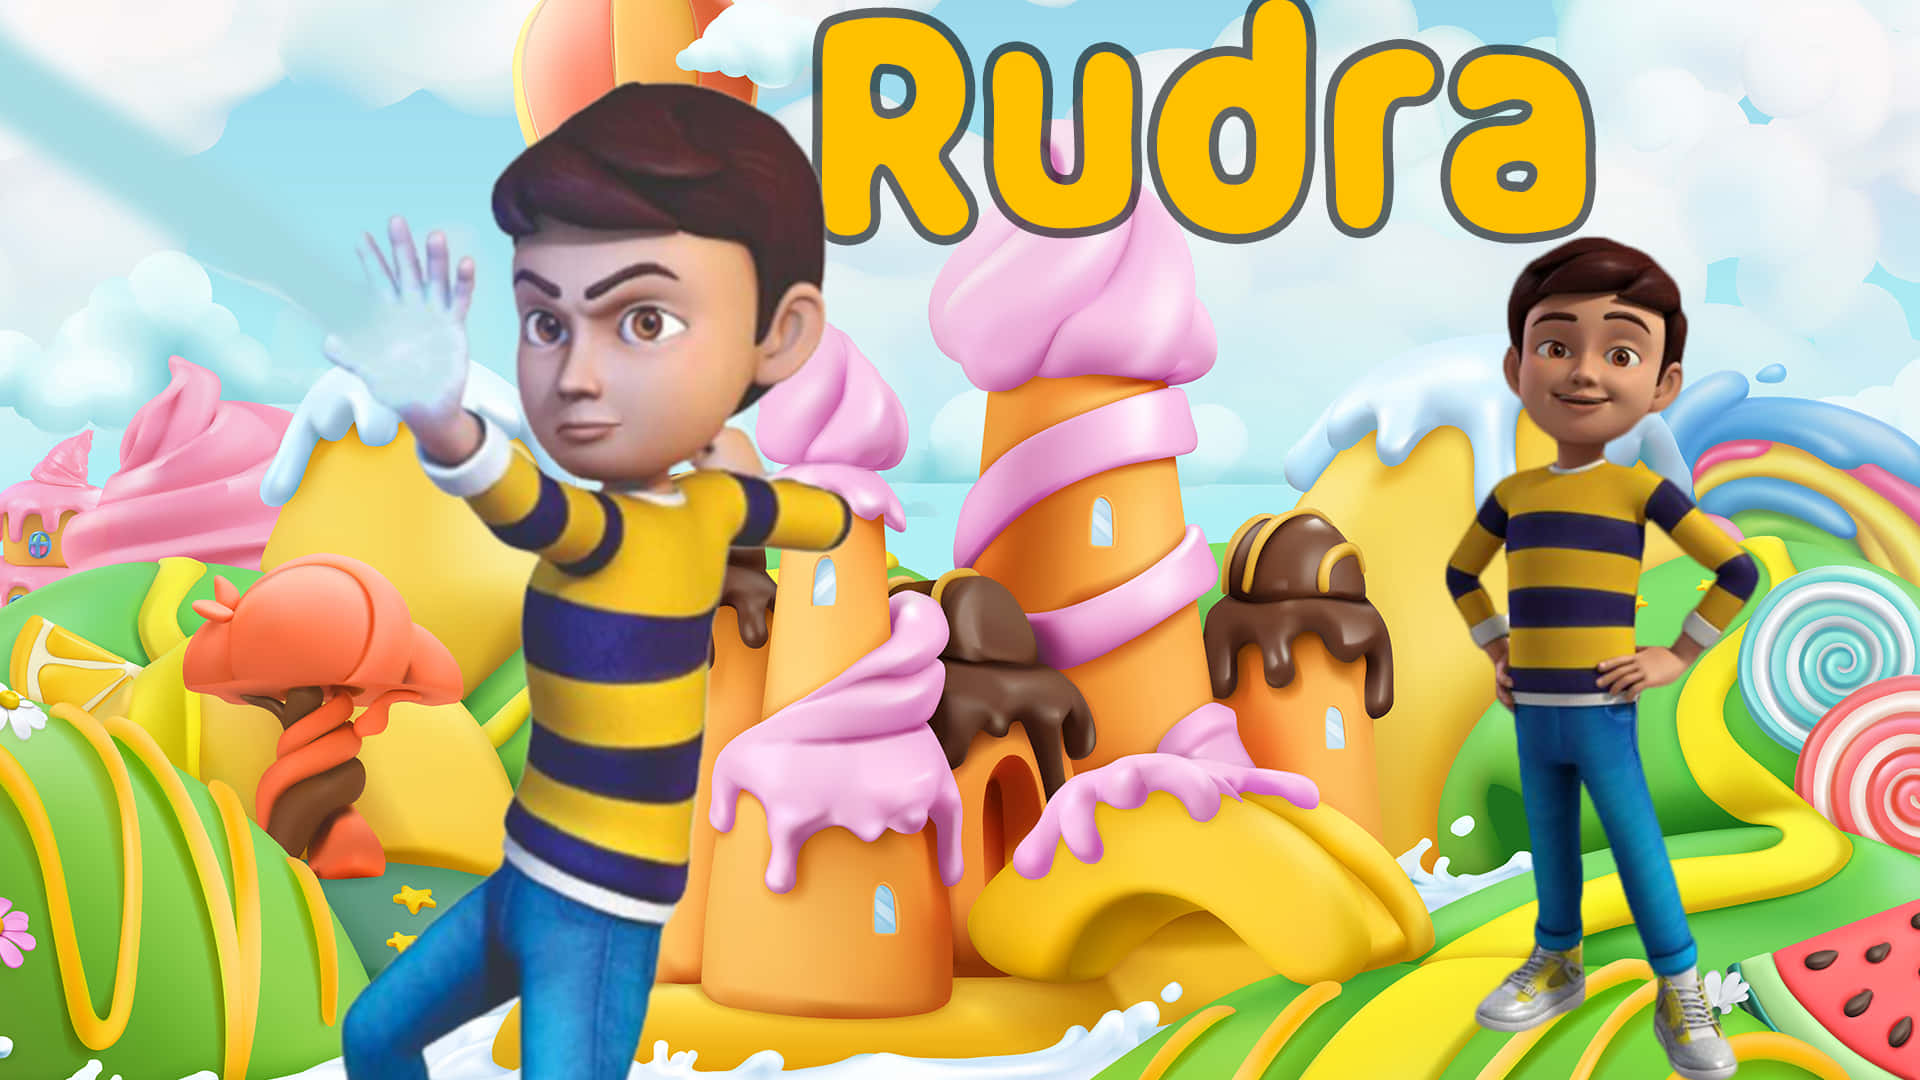 Download Rudra Game Boom Chik Wallpaper 